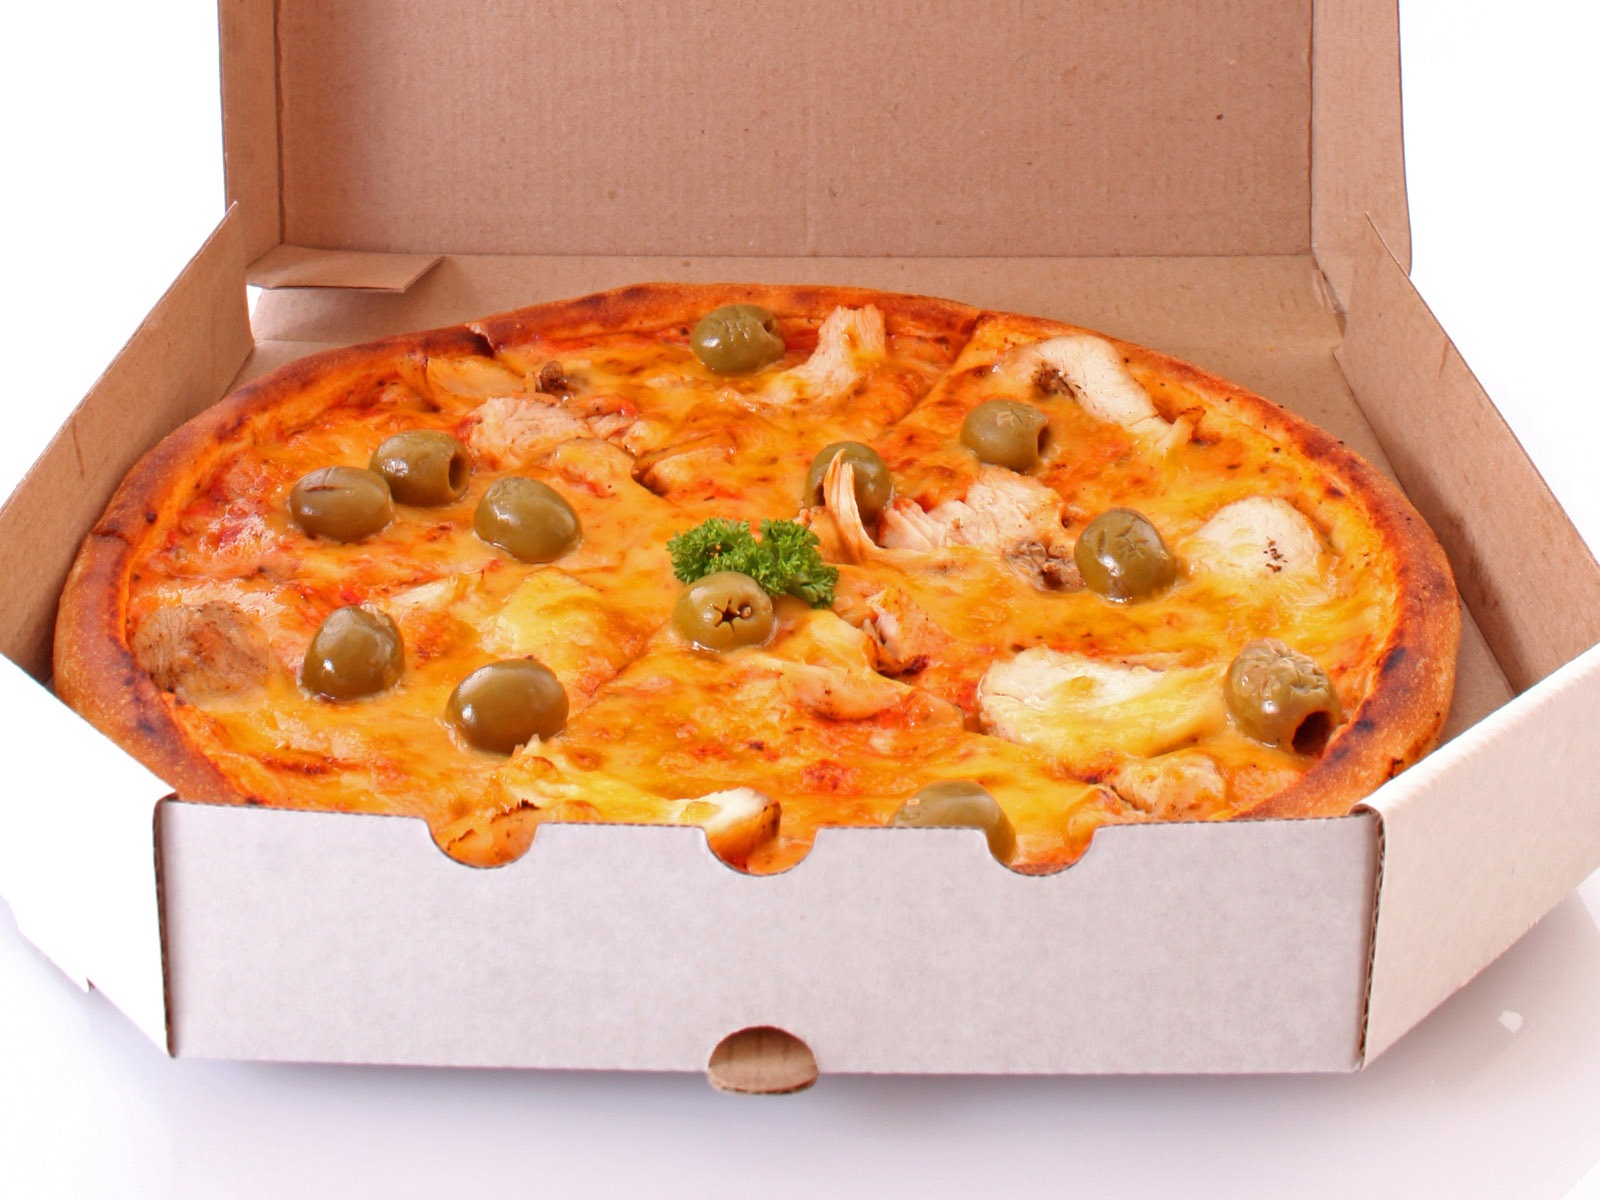 Fondos de pizzerías de Alimentos (3) #13 - 1600x1200